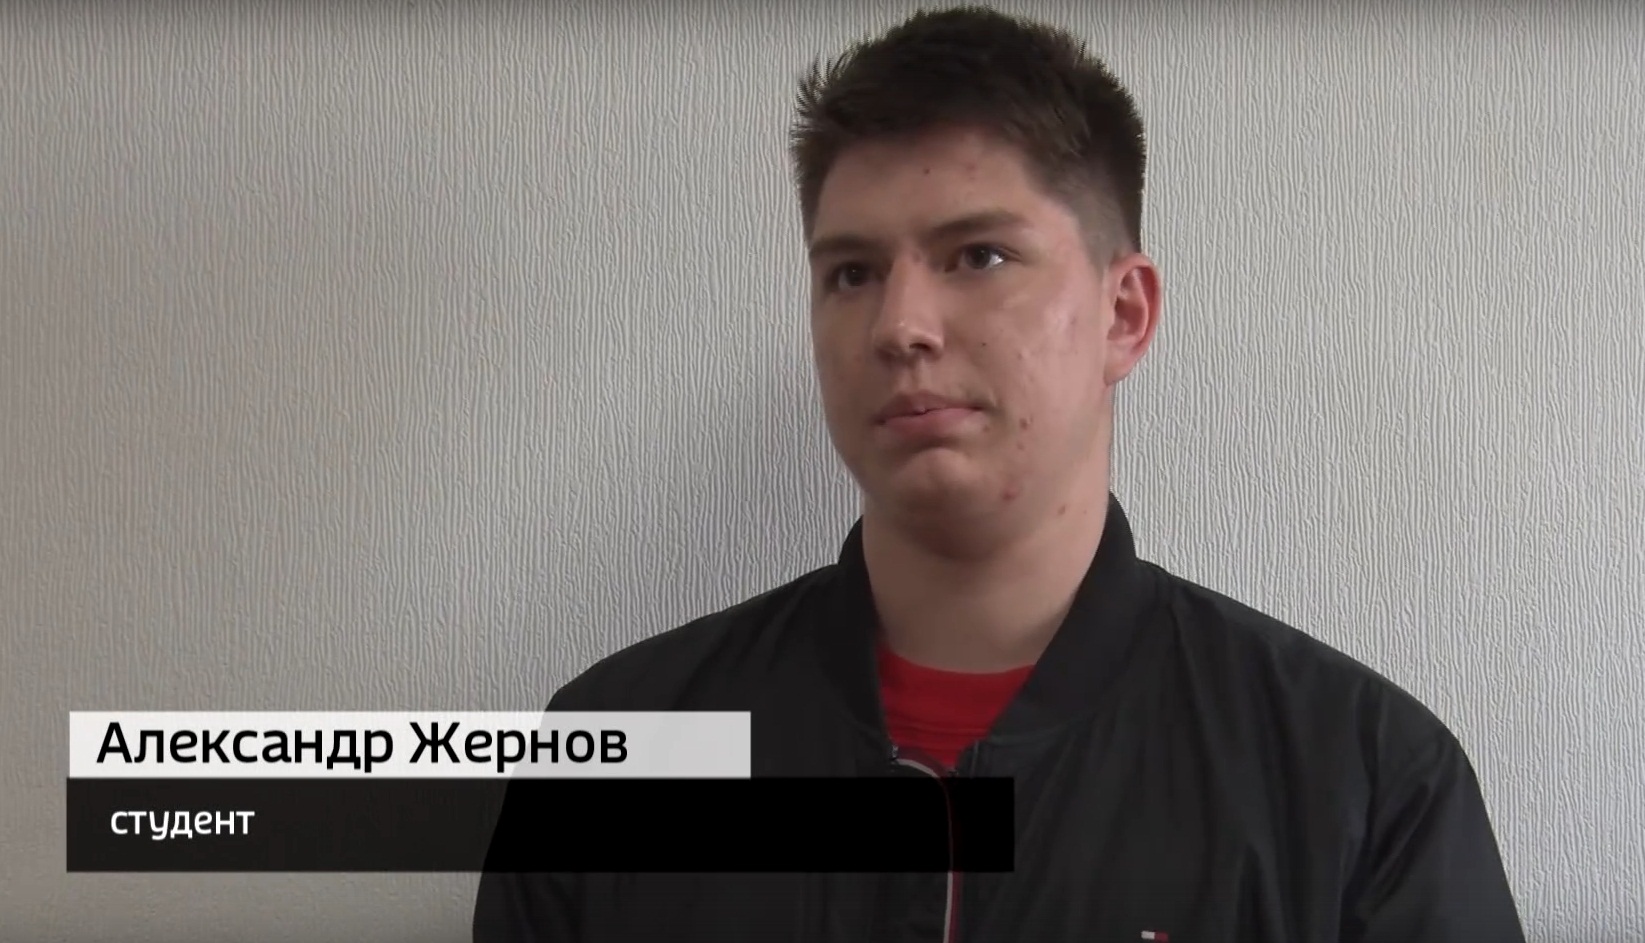 Собственник автомобиля 19-летний студент Александр Жернов. Машину ему купили родители. Водительских прав у него нет